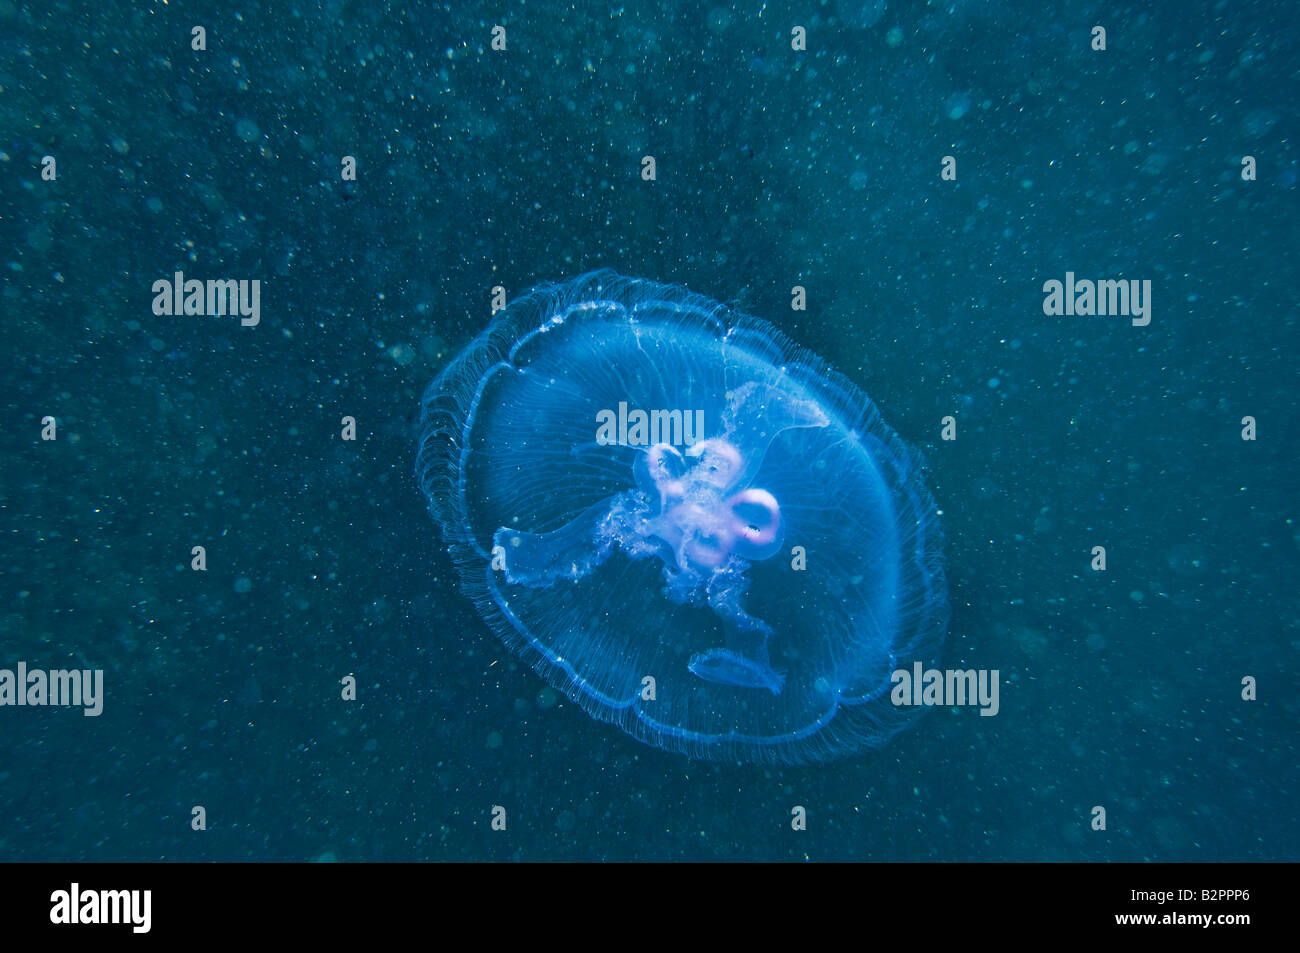 Lilas bleu glisse la Méduse Méduse mer rouge l'ortie zoo Plancton Plancton zooplancton de la faune de la mer libre Banque D'Images